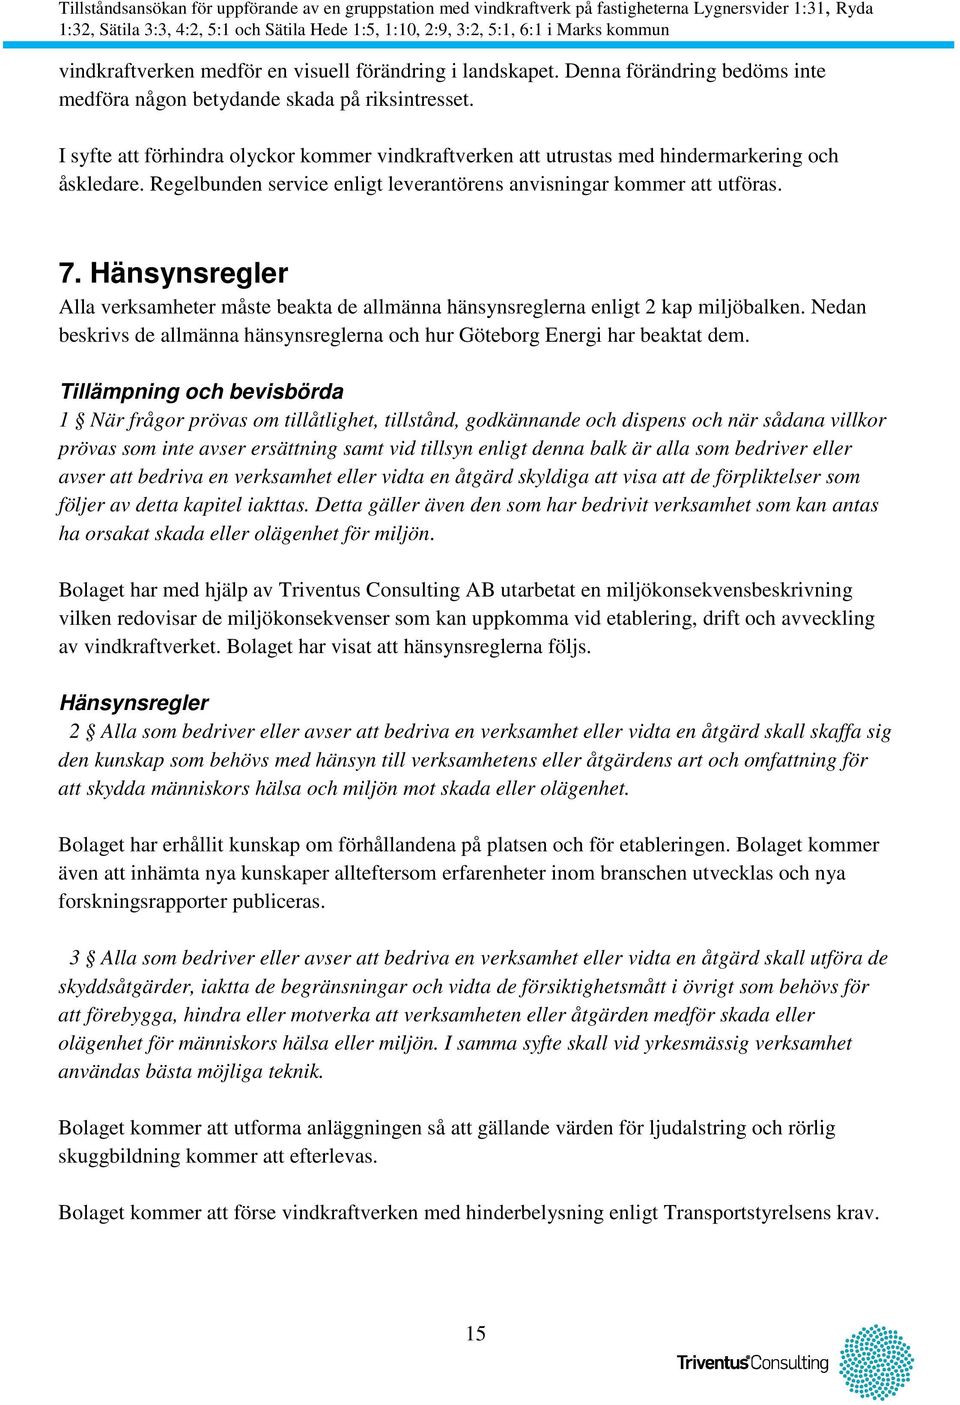 Hänsynsregler Alla verksamheter måste beakta de allmänna hänsynsreglerna enligt 2 kap miljöbalken. Nedan beskrivs de allmänna hänsynsreglerna och hur Göteborg Energi har beaktat dem.